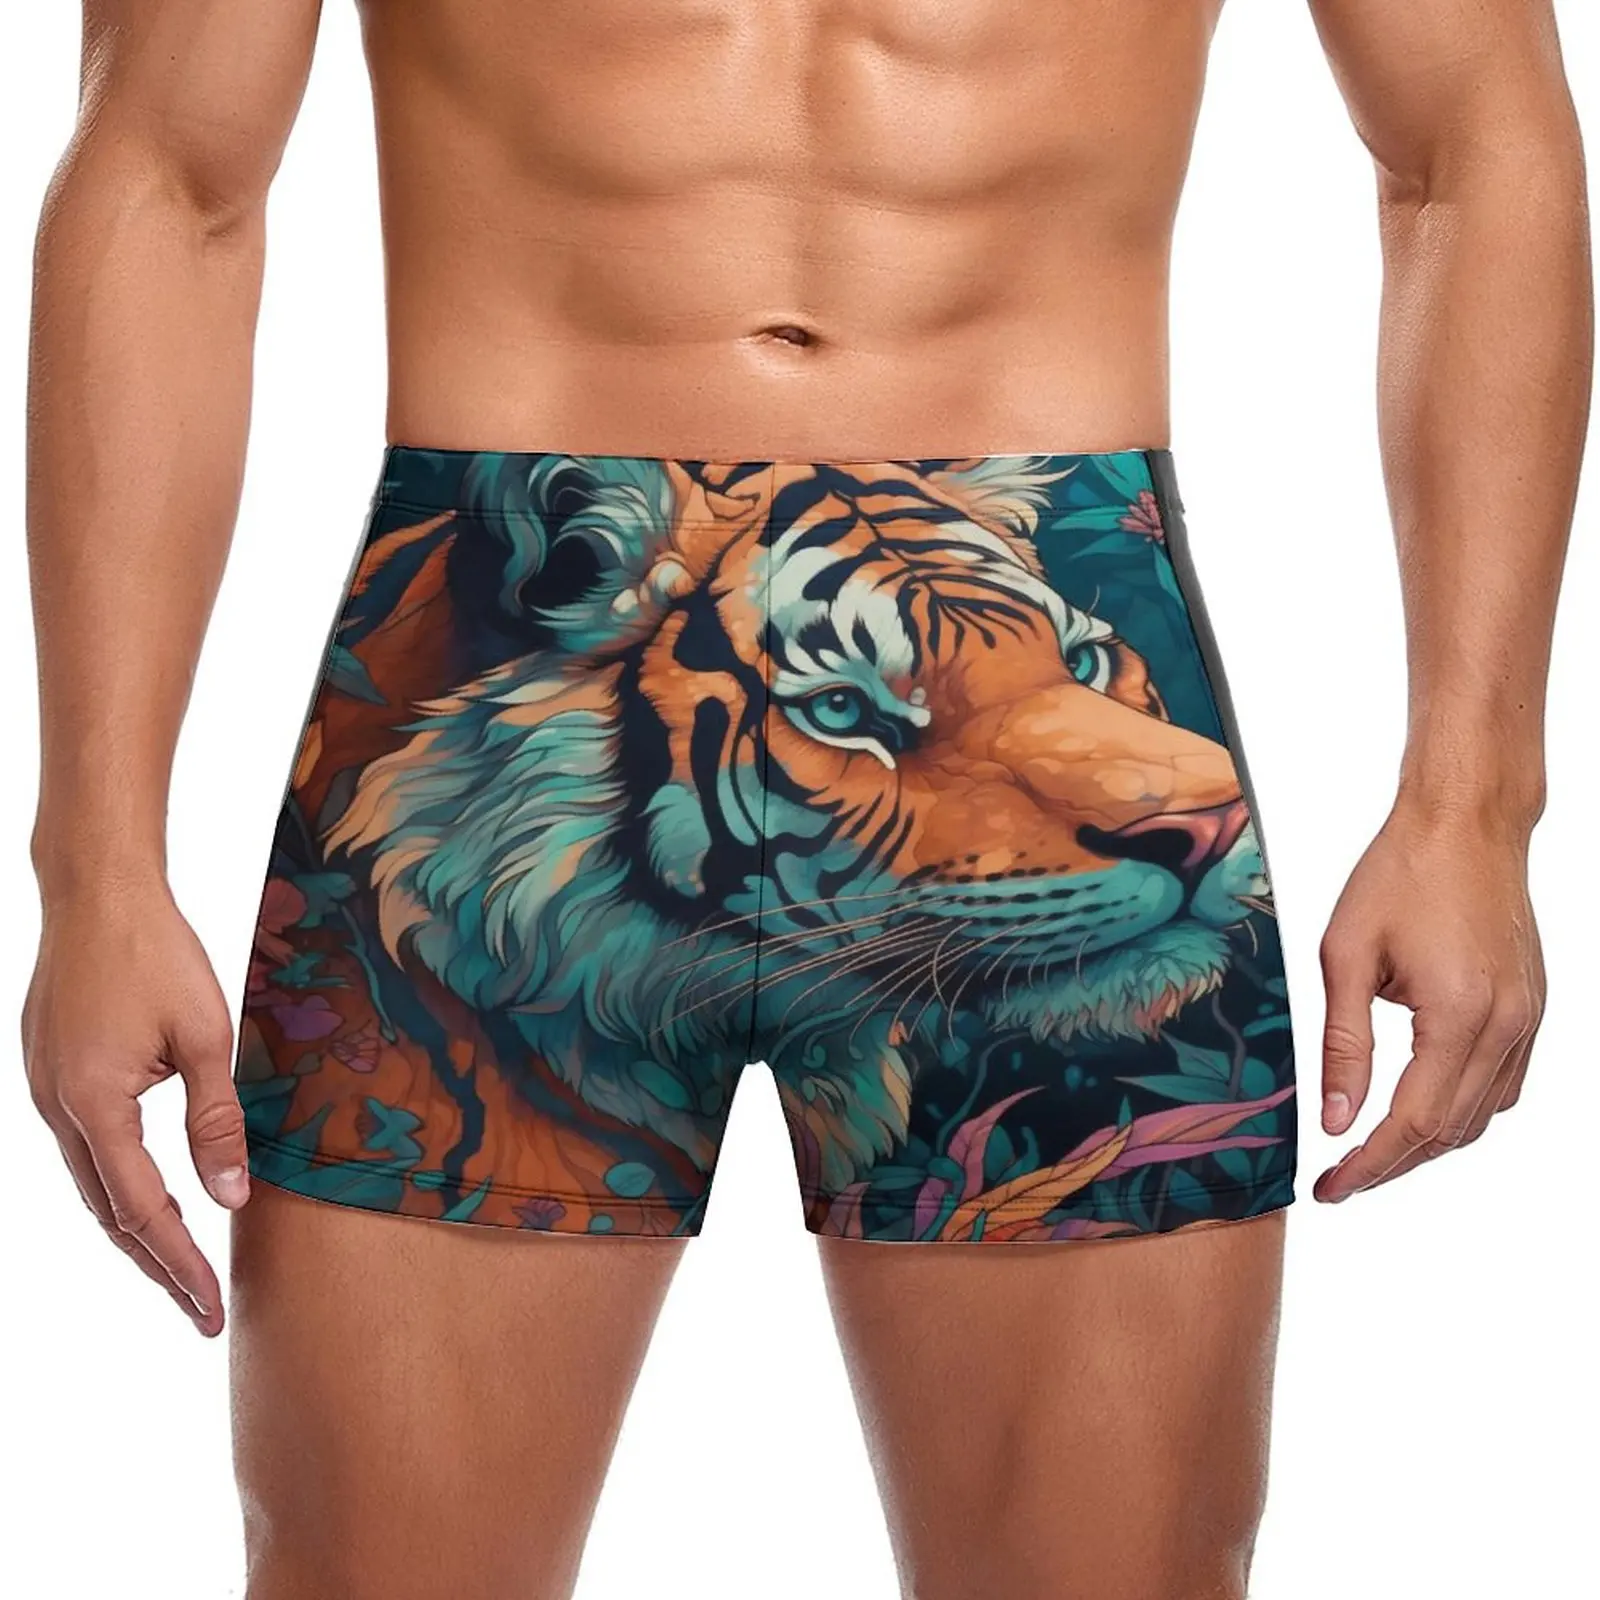 

Купальные трусы с тигром, прочные боксеры для плавания с неоновым красочным рисунком, пляжные мужские Купальники больших размеров